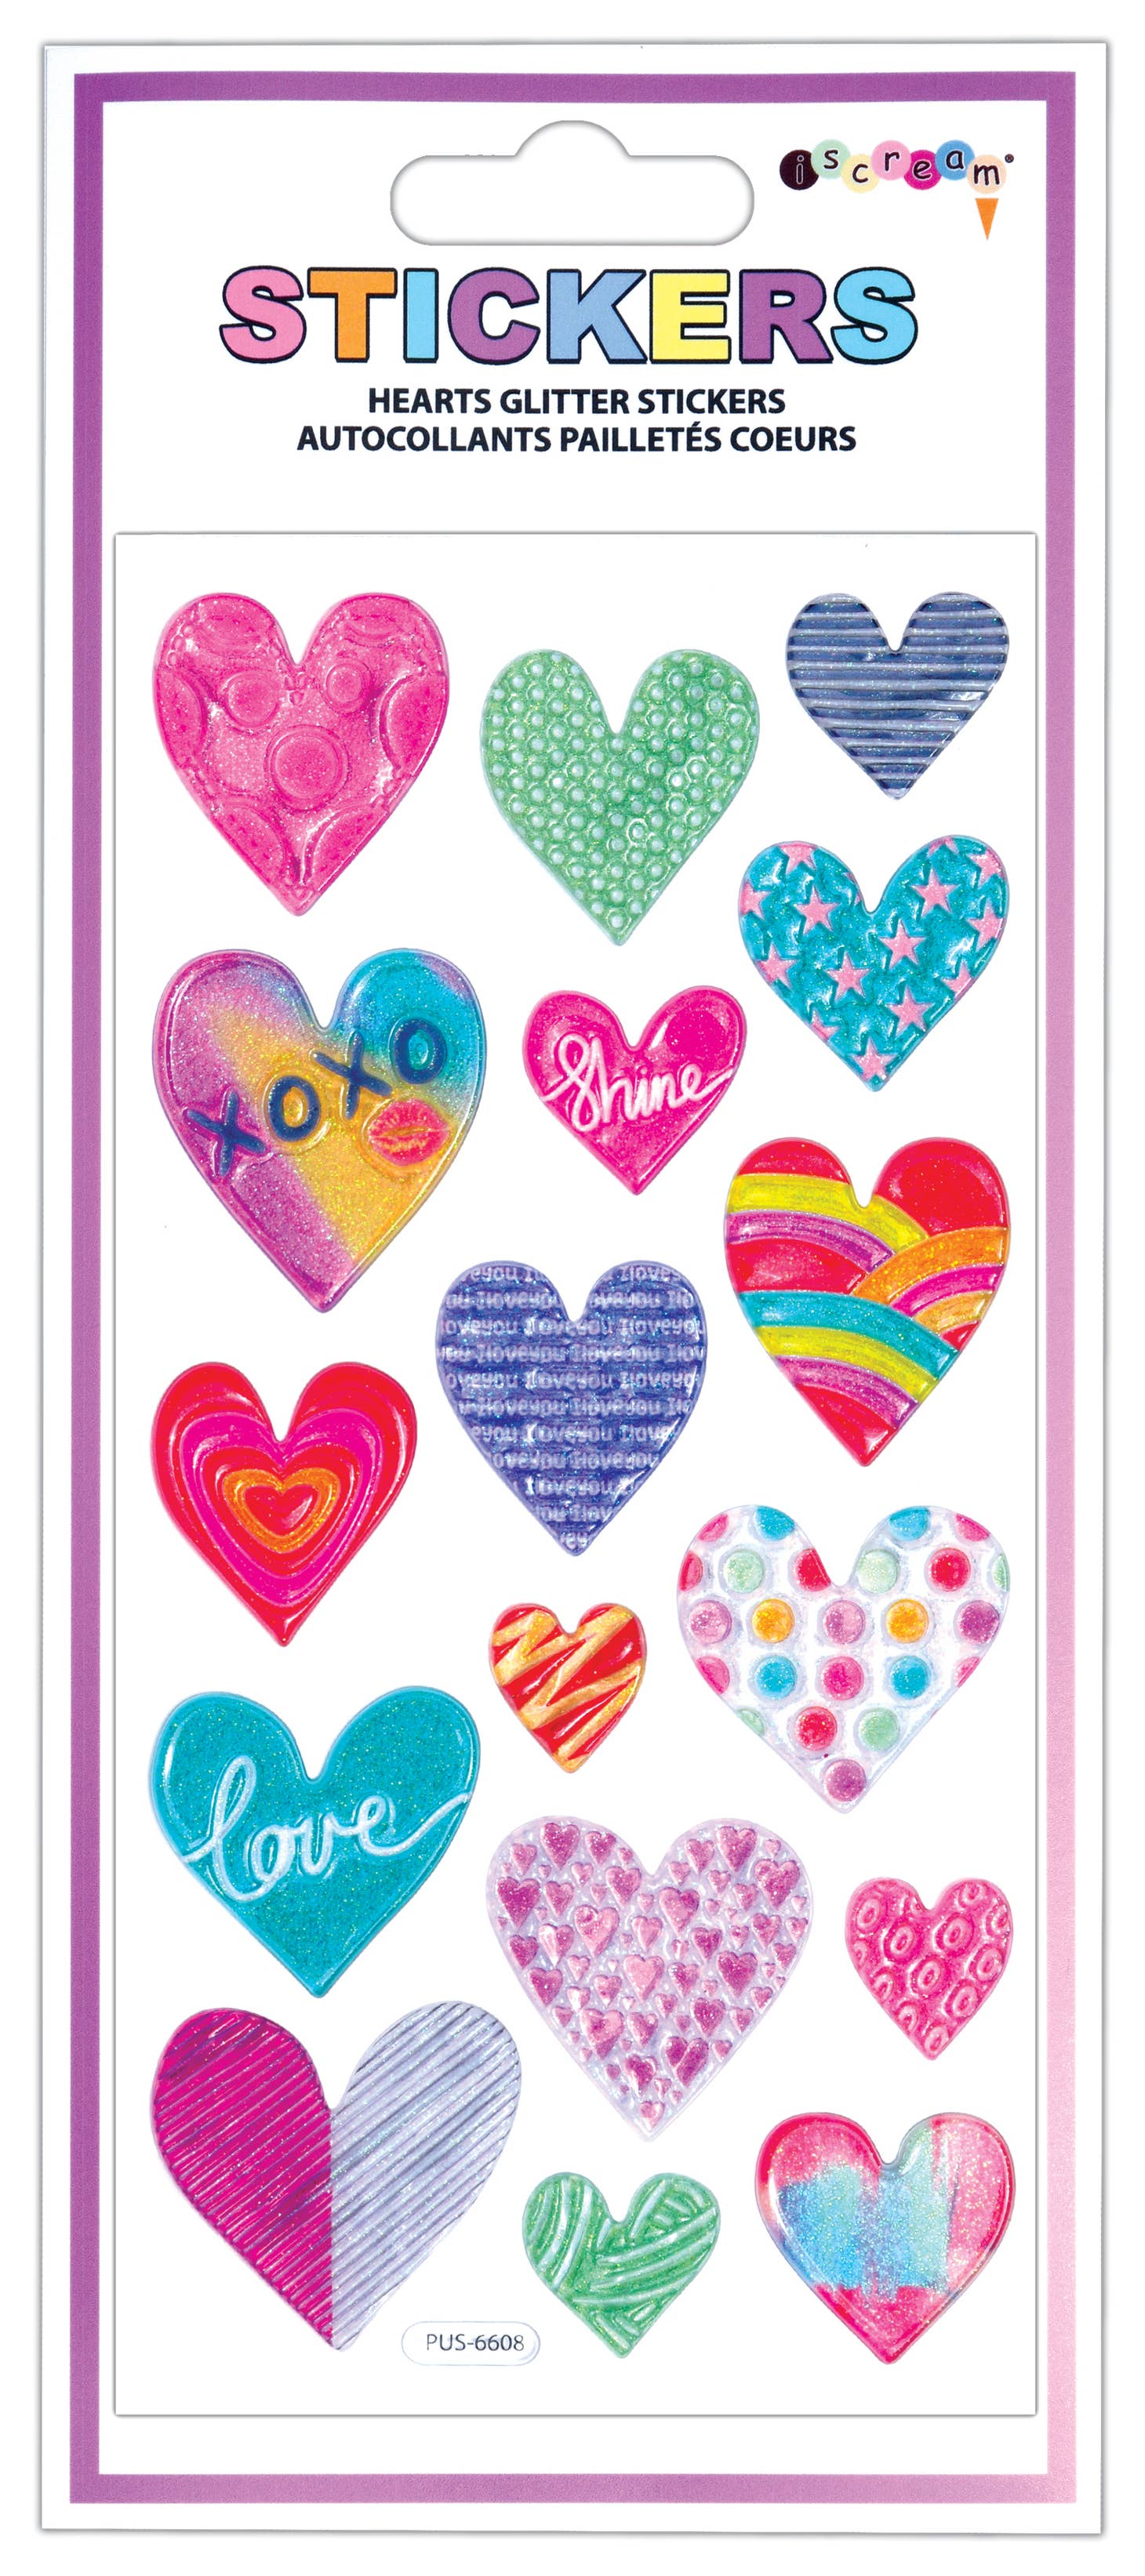 Hearts Glitter Stickers Tea for Three: A Children's Boutique